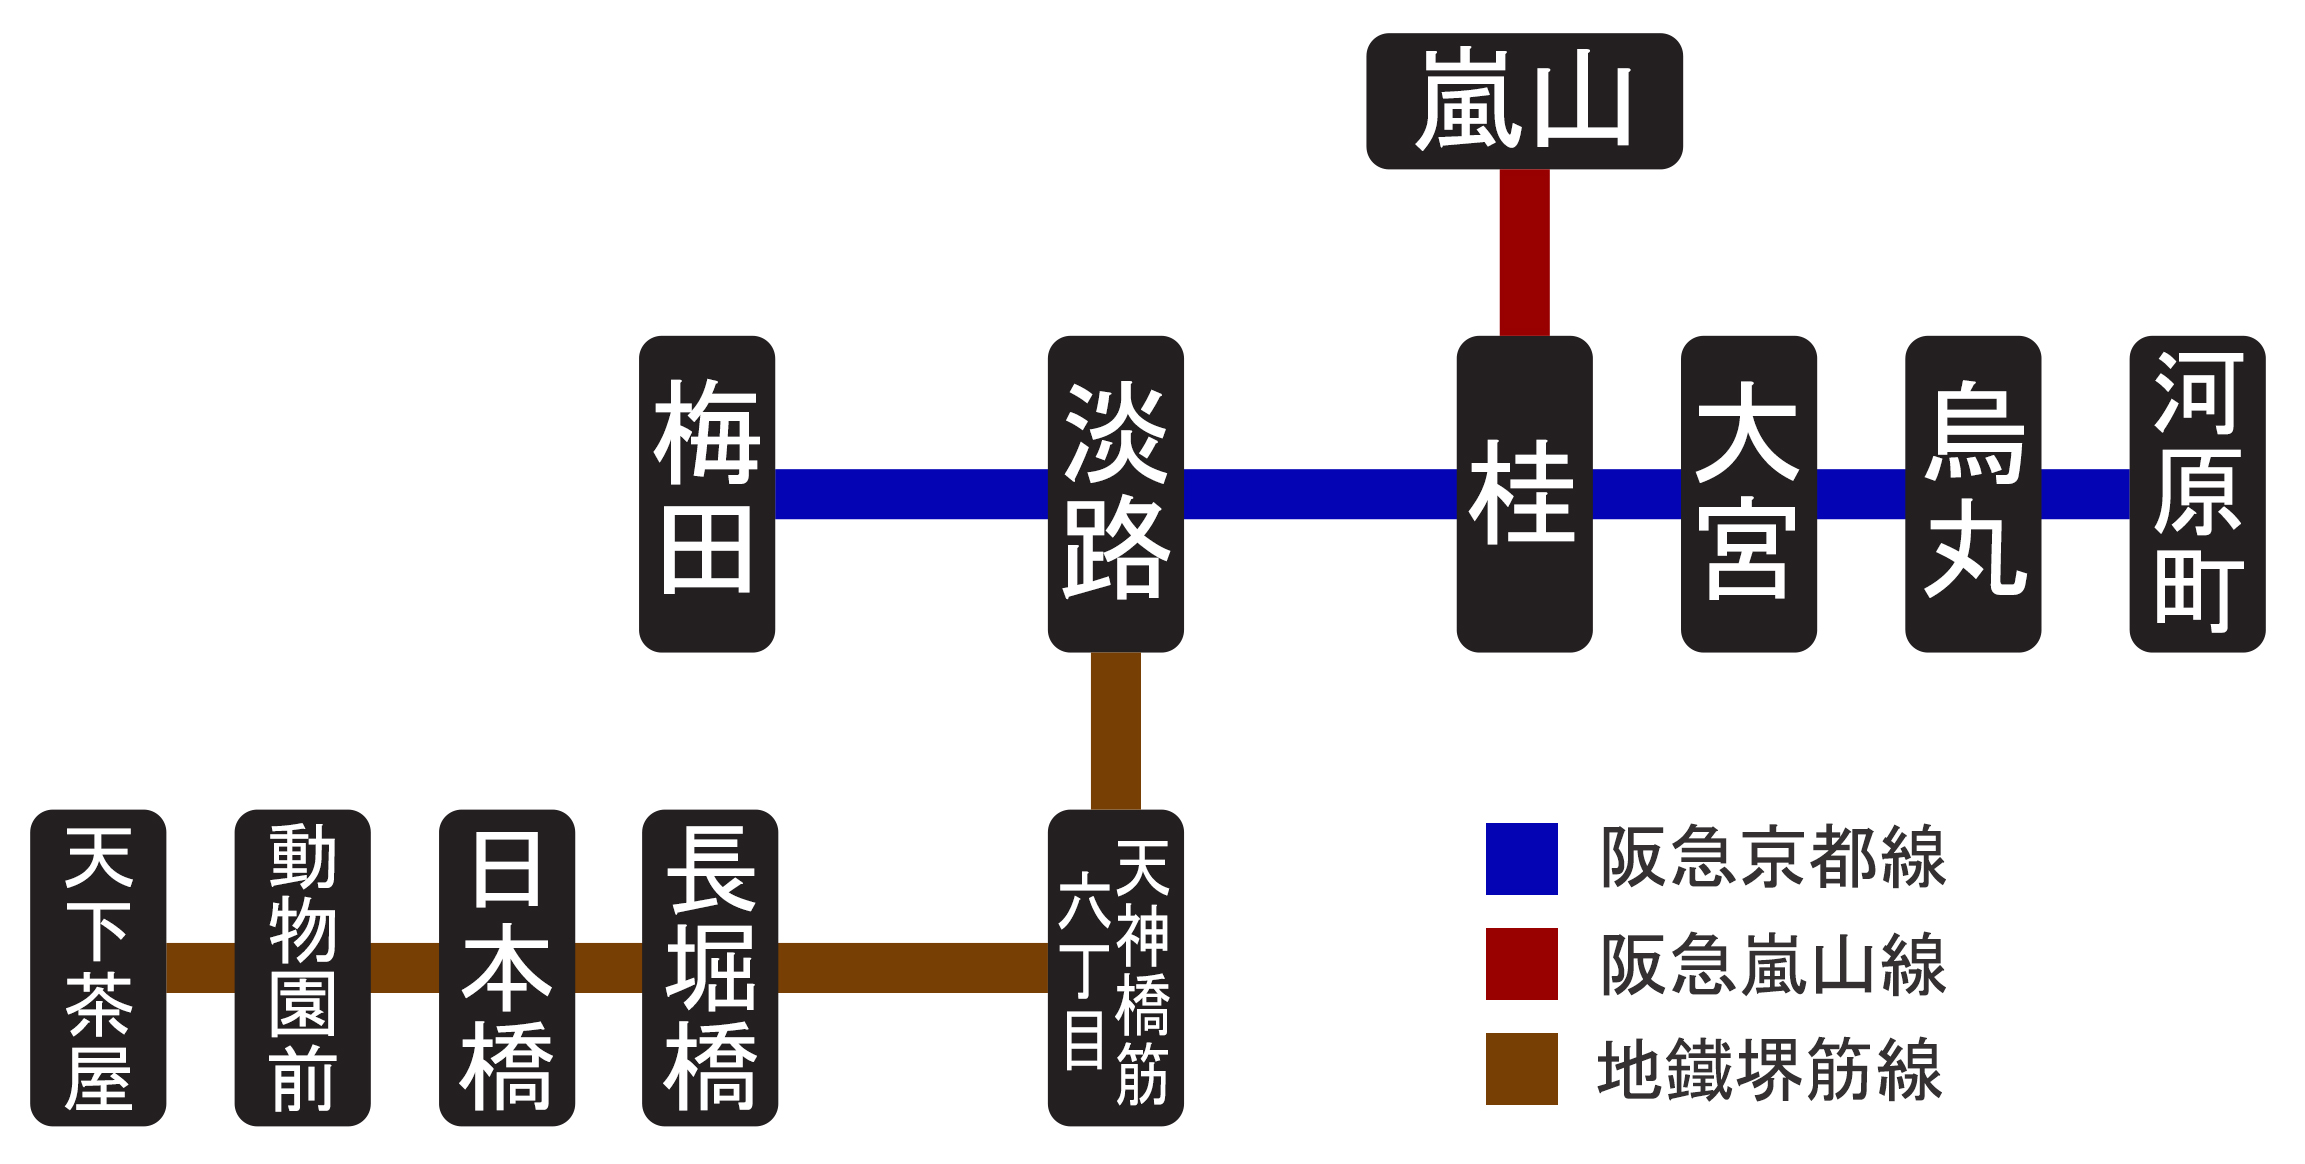 大阪京都交通懶人包 阪急電鐵 京都線、嵐山線